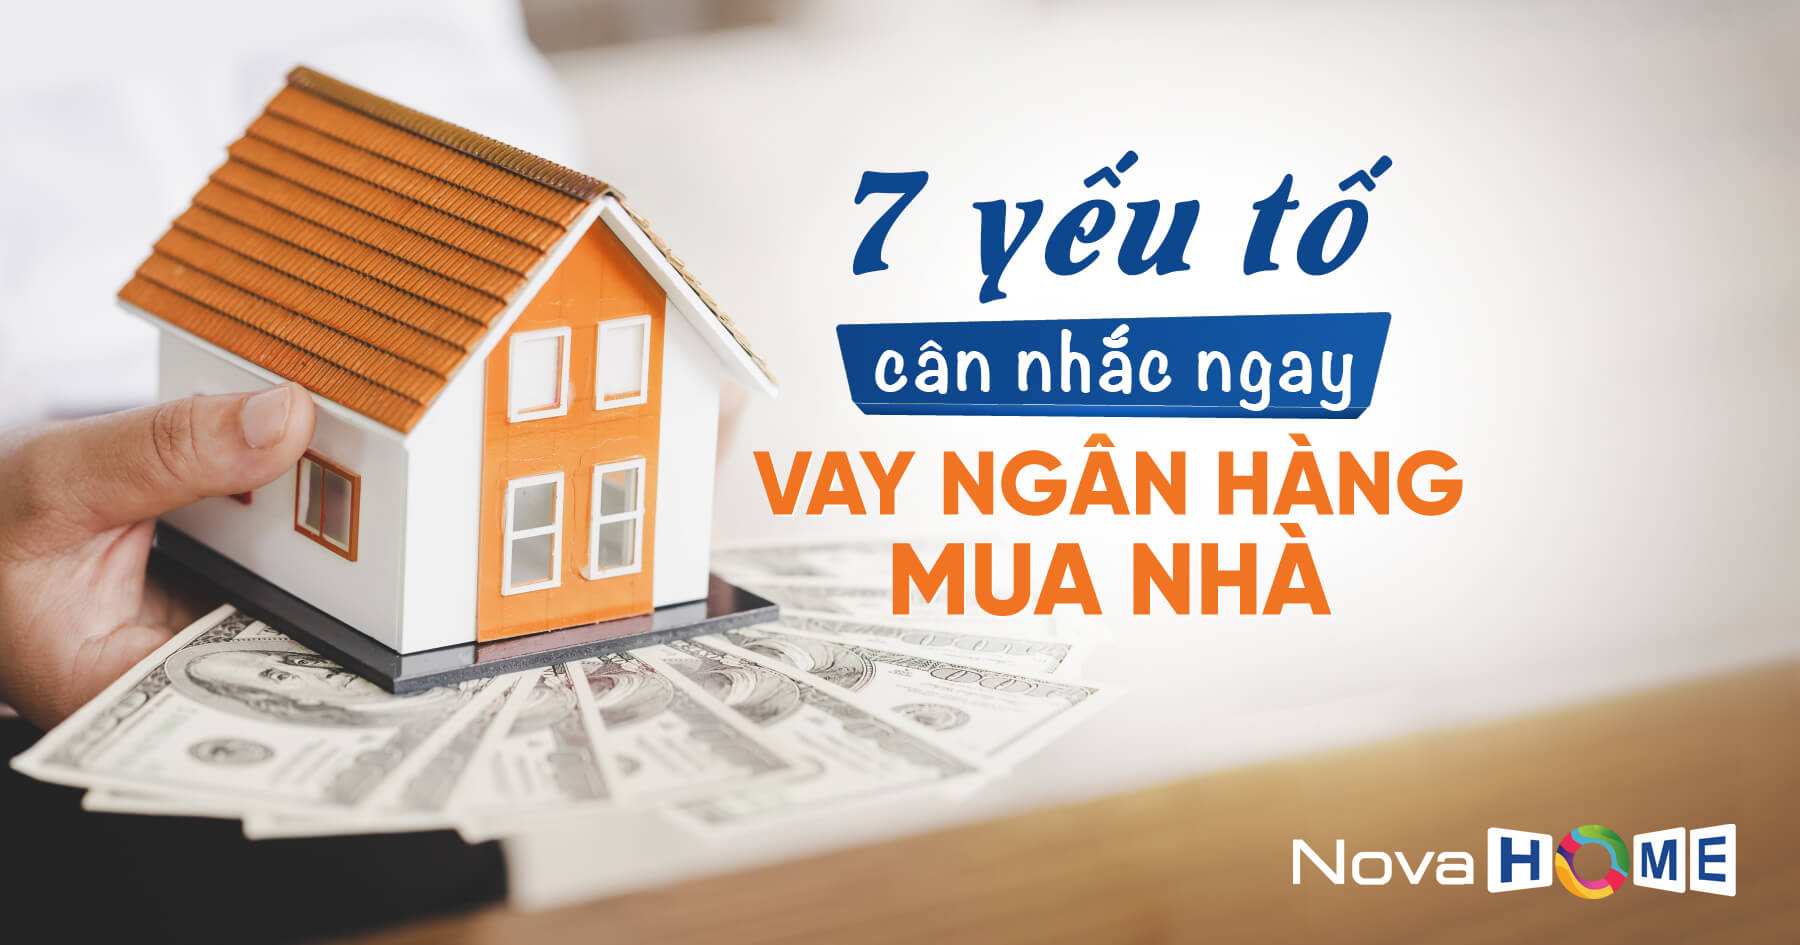 Vay tiền ngân hàng mua nhà phải cân nhắc ngay 7 yếu tố này | Novahome